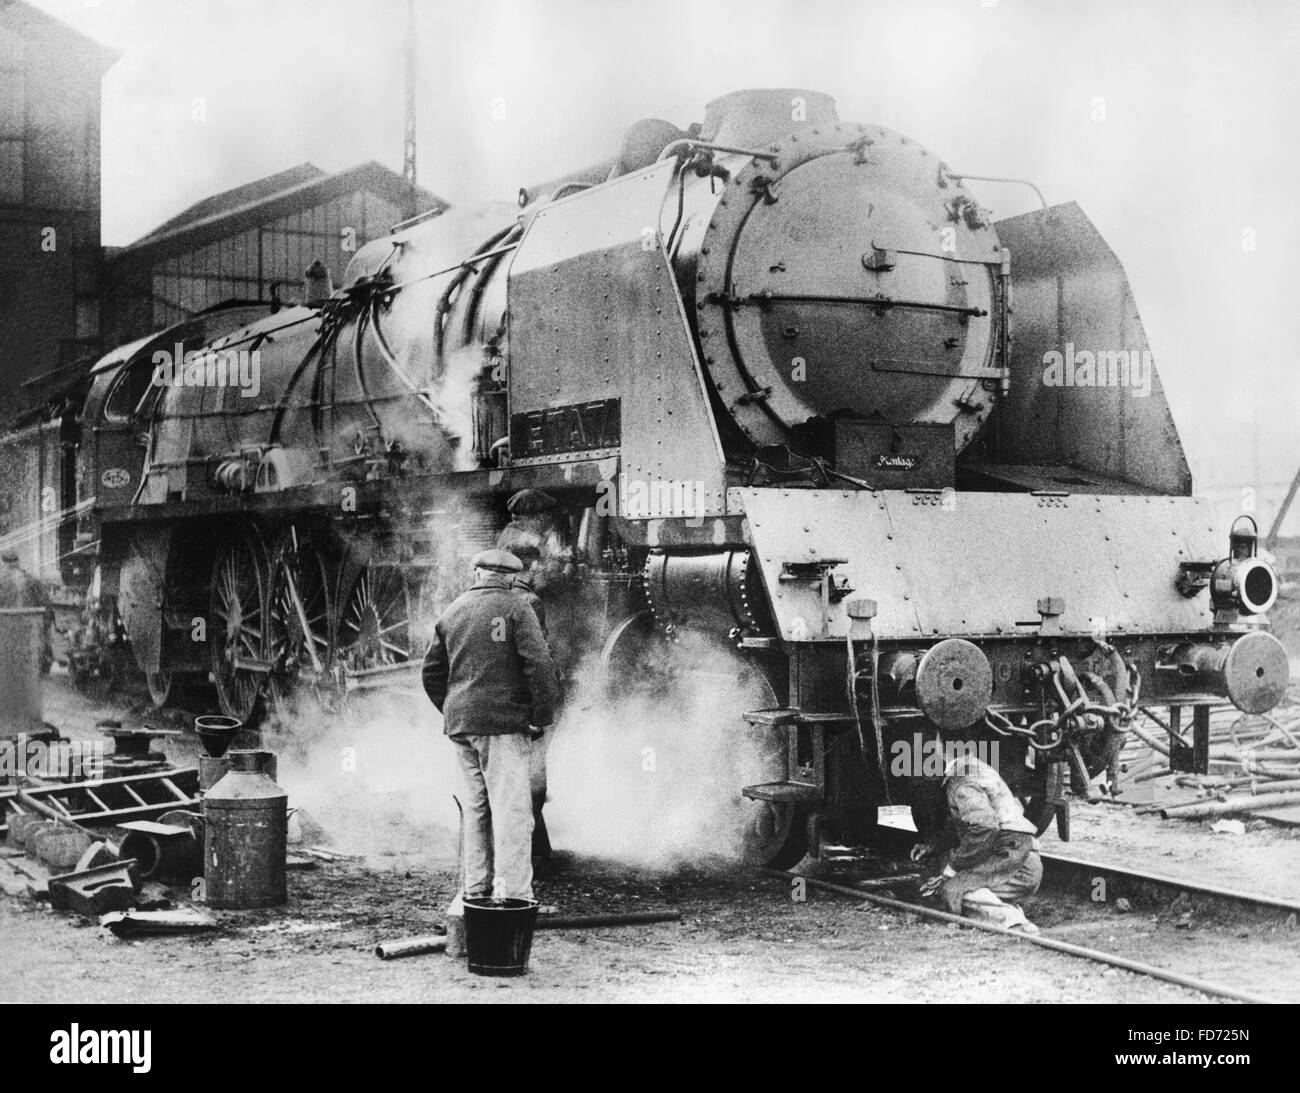 Locomotive in France, 1930s Stock Photo